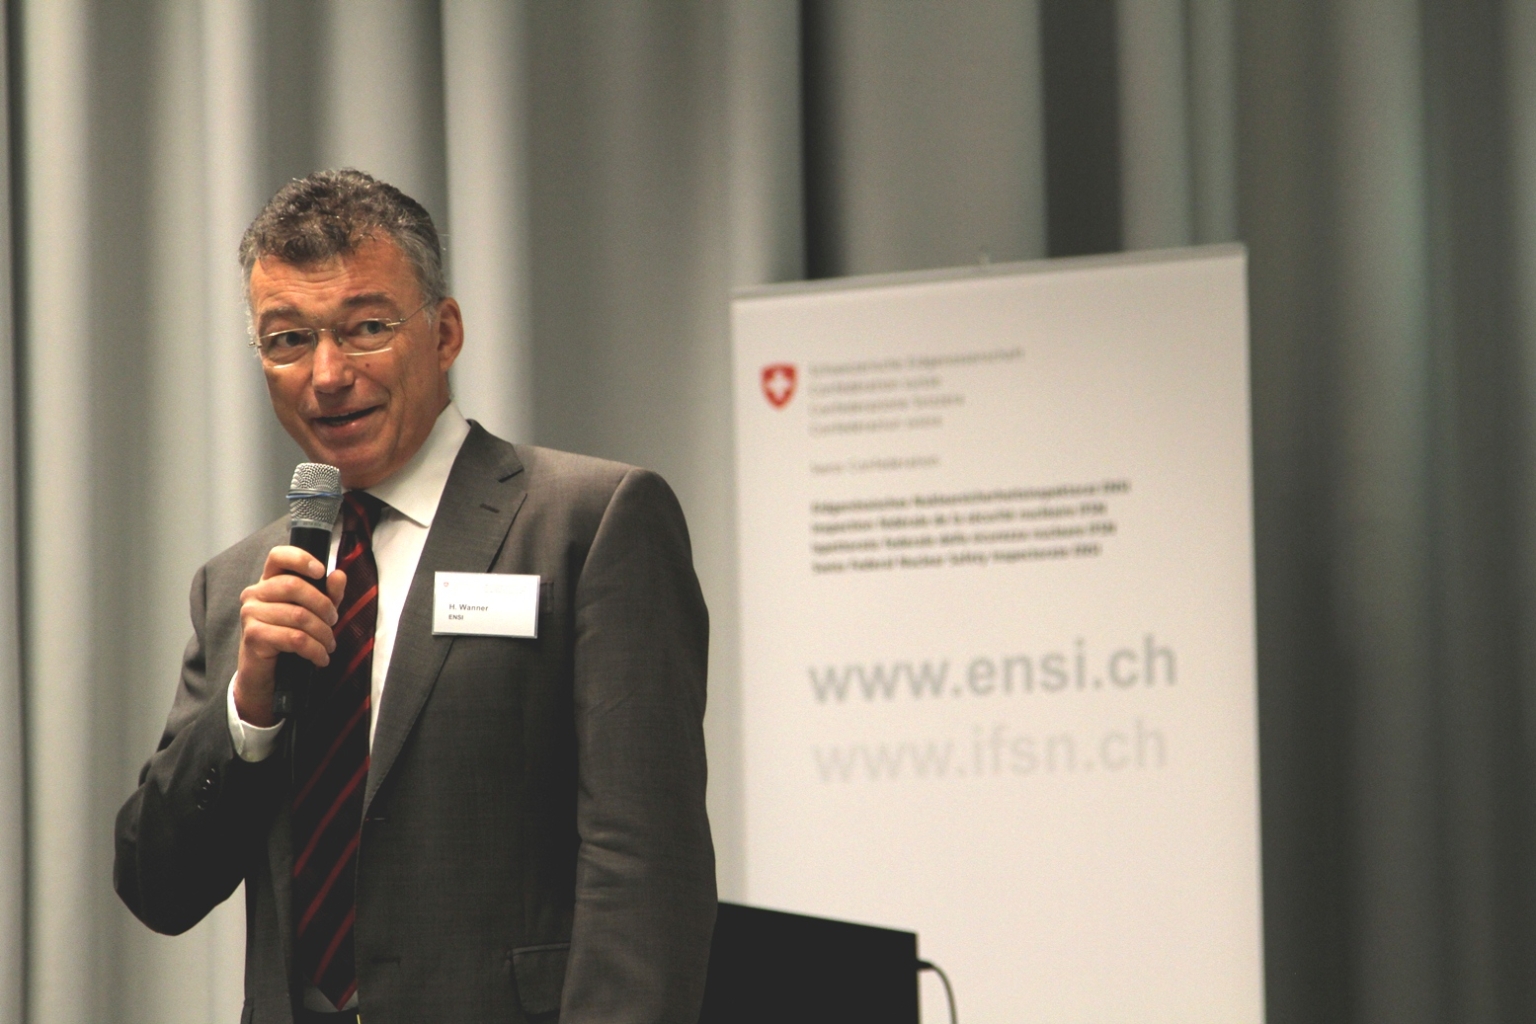 In seiner Zusammenfassung zog Ensi-Direktor Hans Wanner eine positive Bilanz des Ensi-Forums vom 4. September 2012: «Es ist wichtig, dass der Dialog geführt wird.»